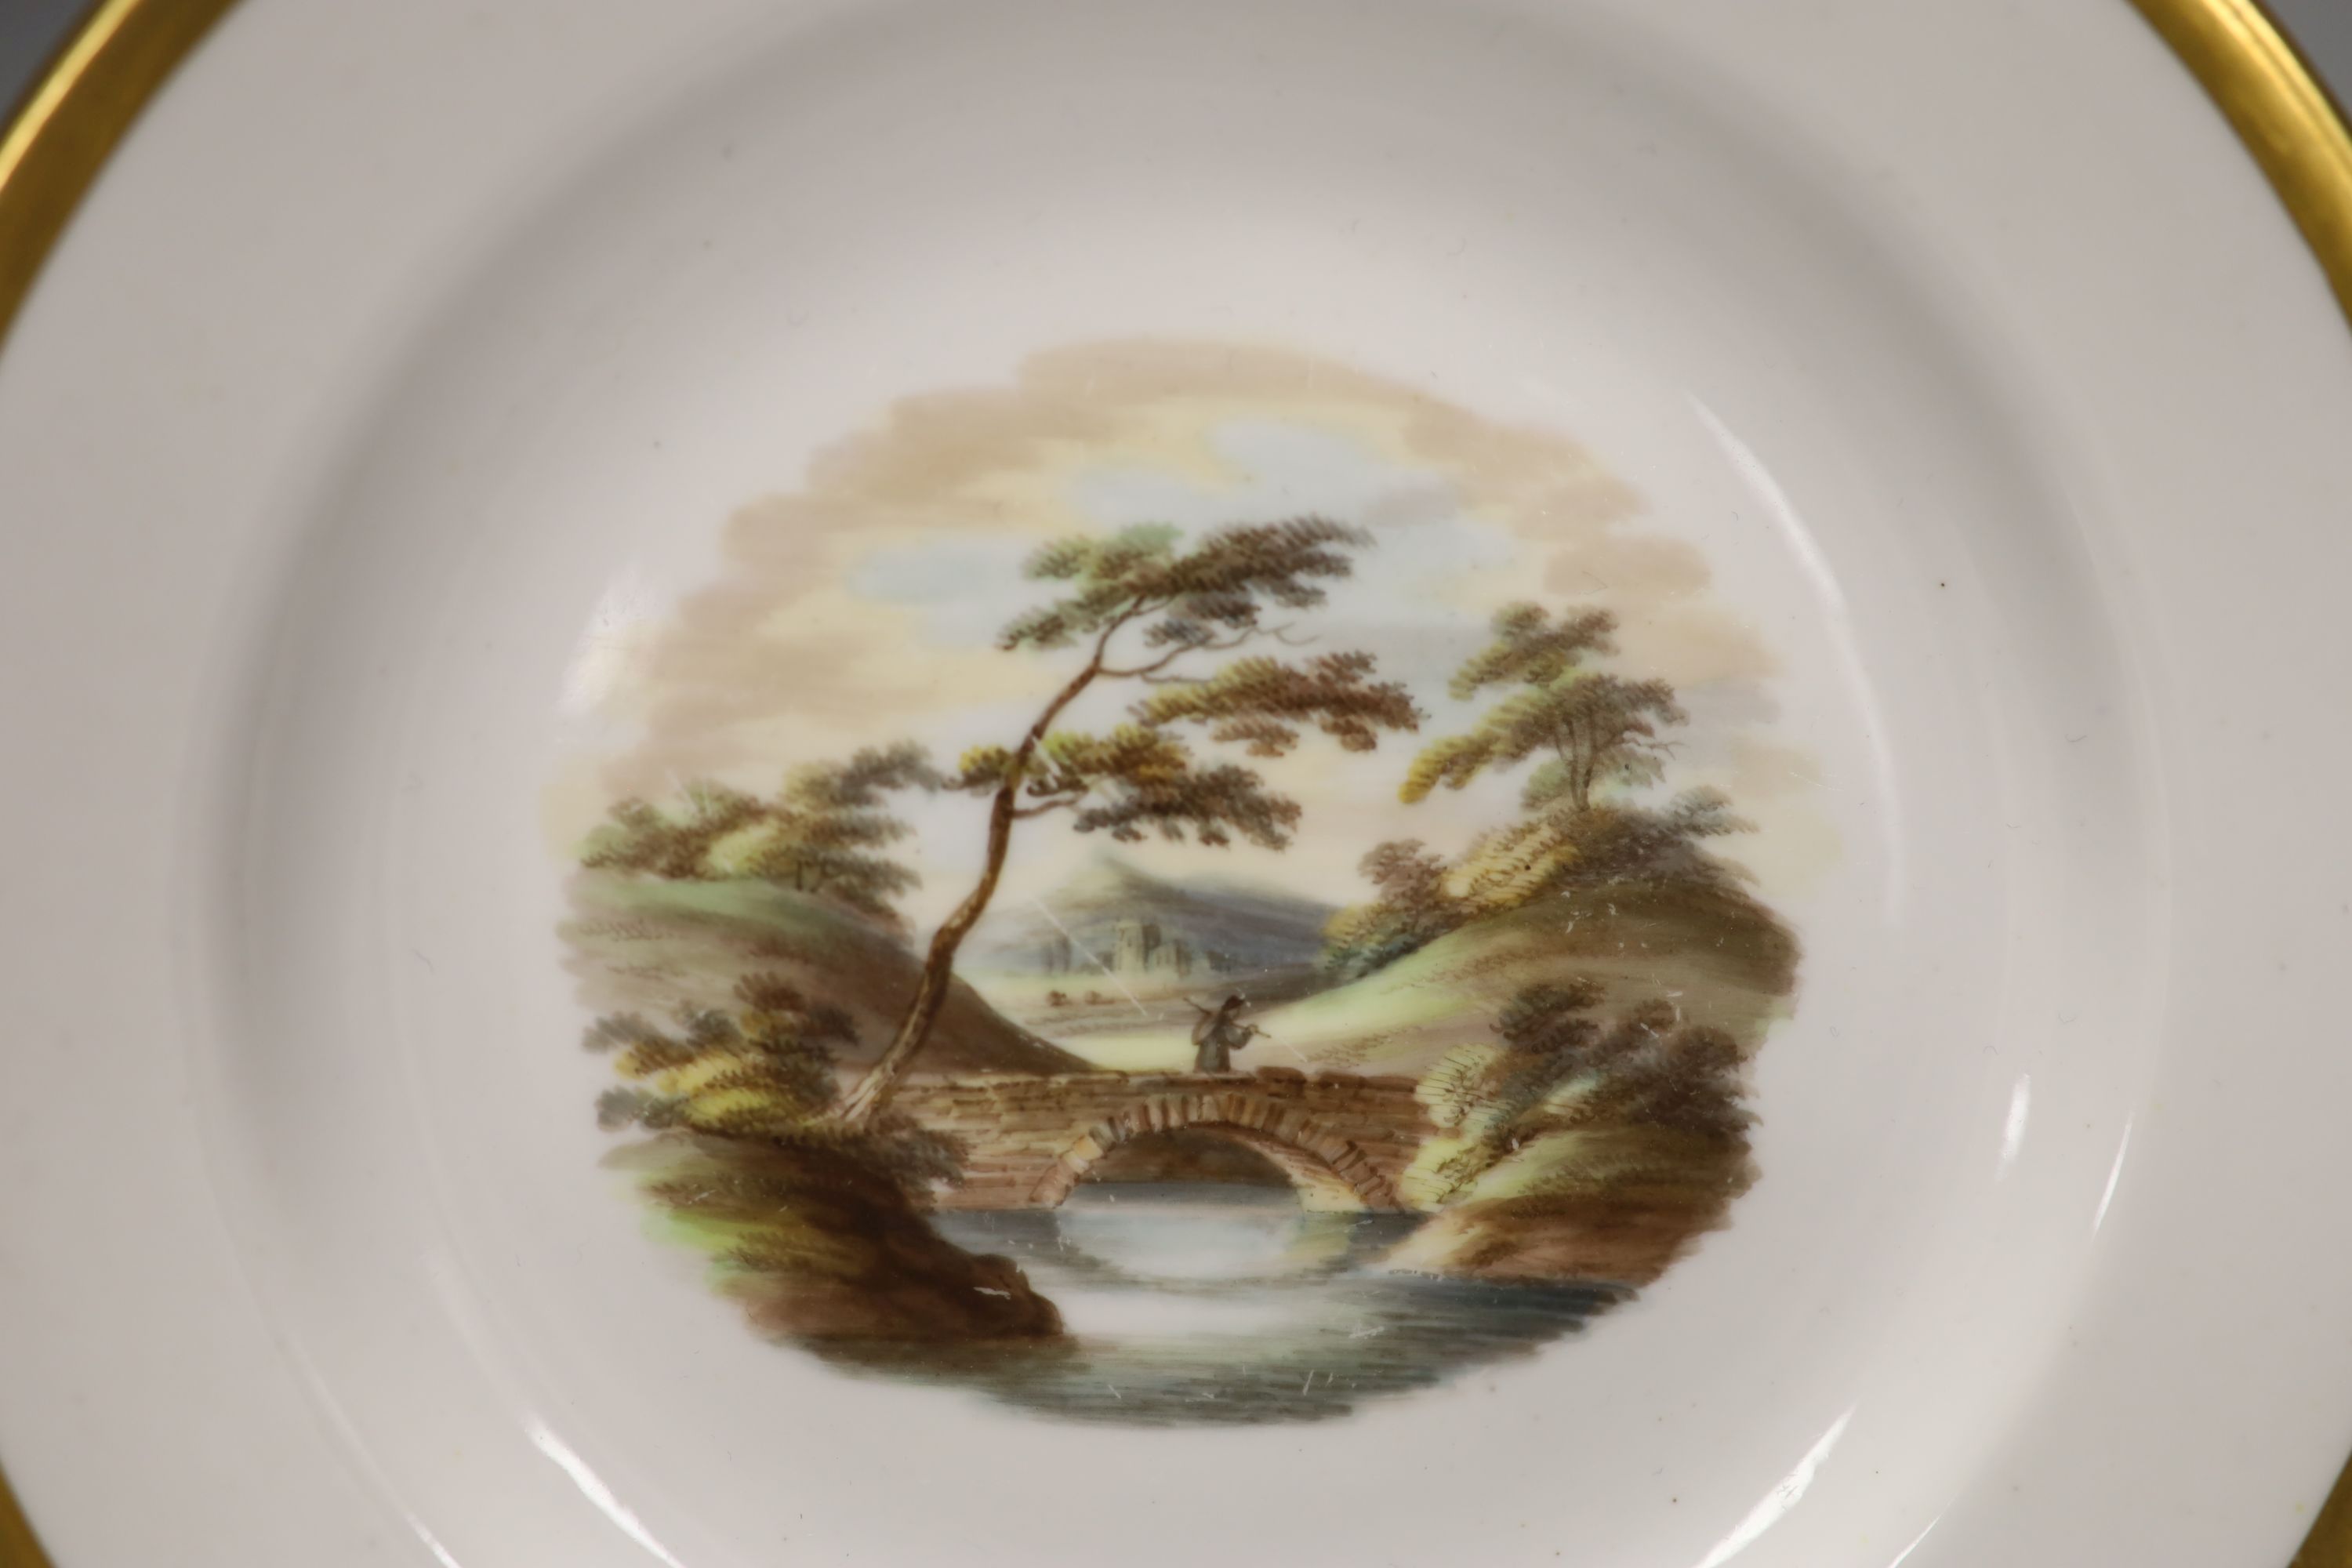 Two Spode painted plates with landscape scenes Conisbrough Castle, Bridge on River Trent, c.1820, diameter 18cm